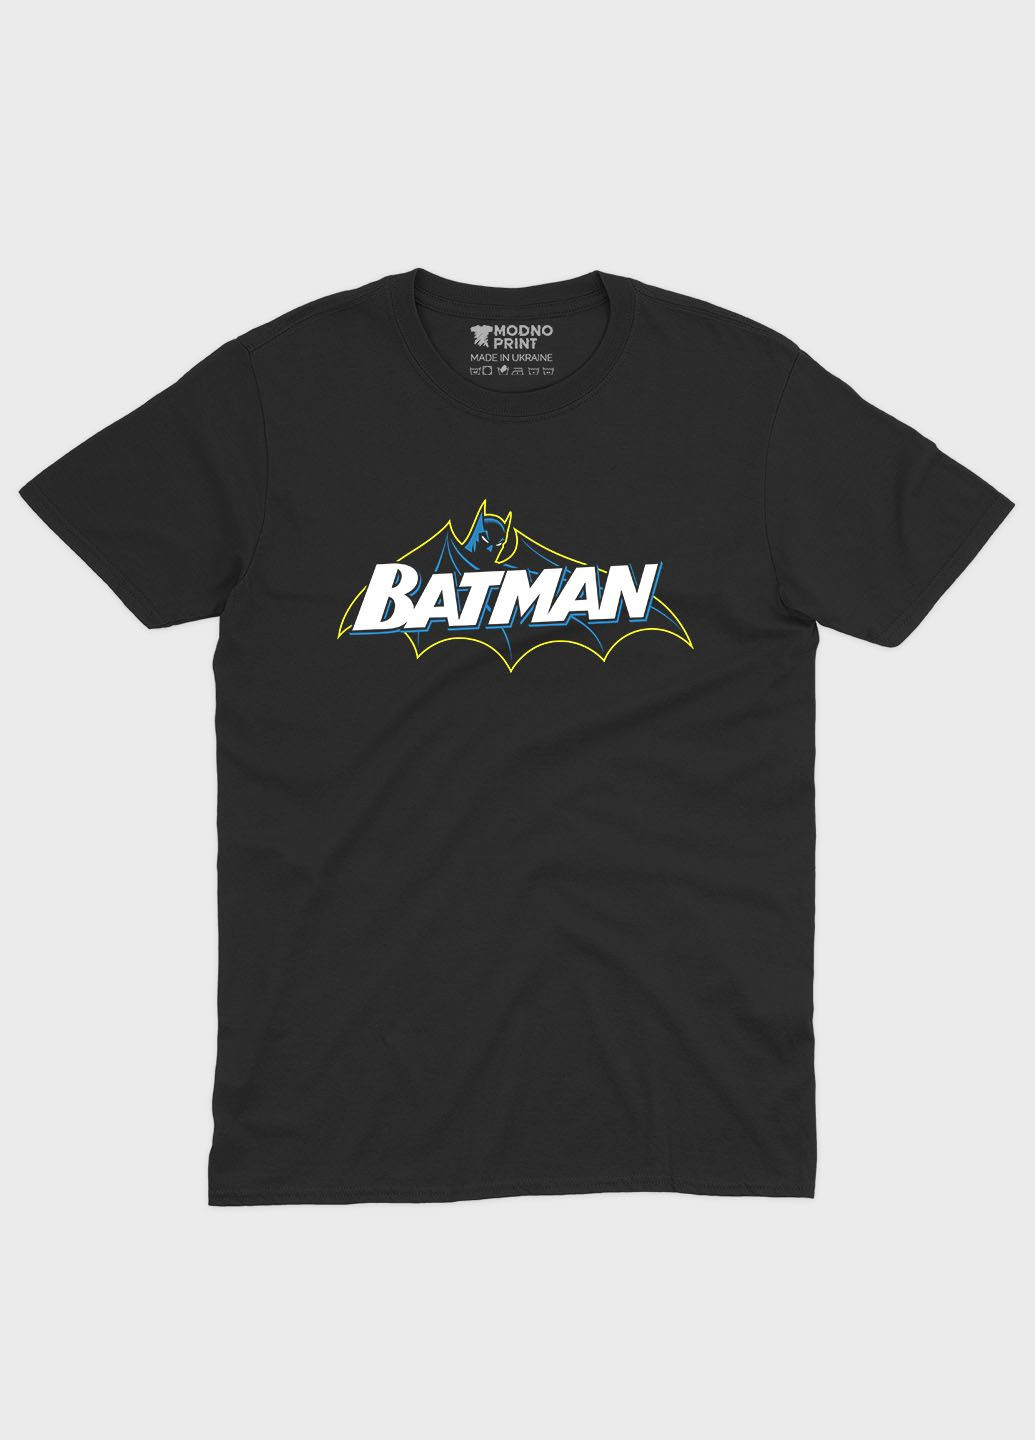 Черная мужская футболка с принтом супергероя - бэтмен (ts001-1-bl-006-003-021) Modno